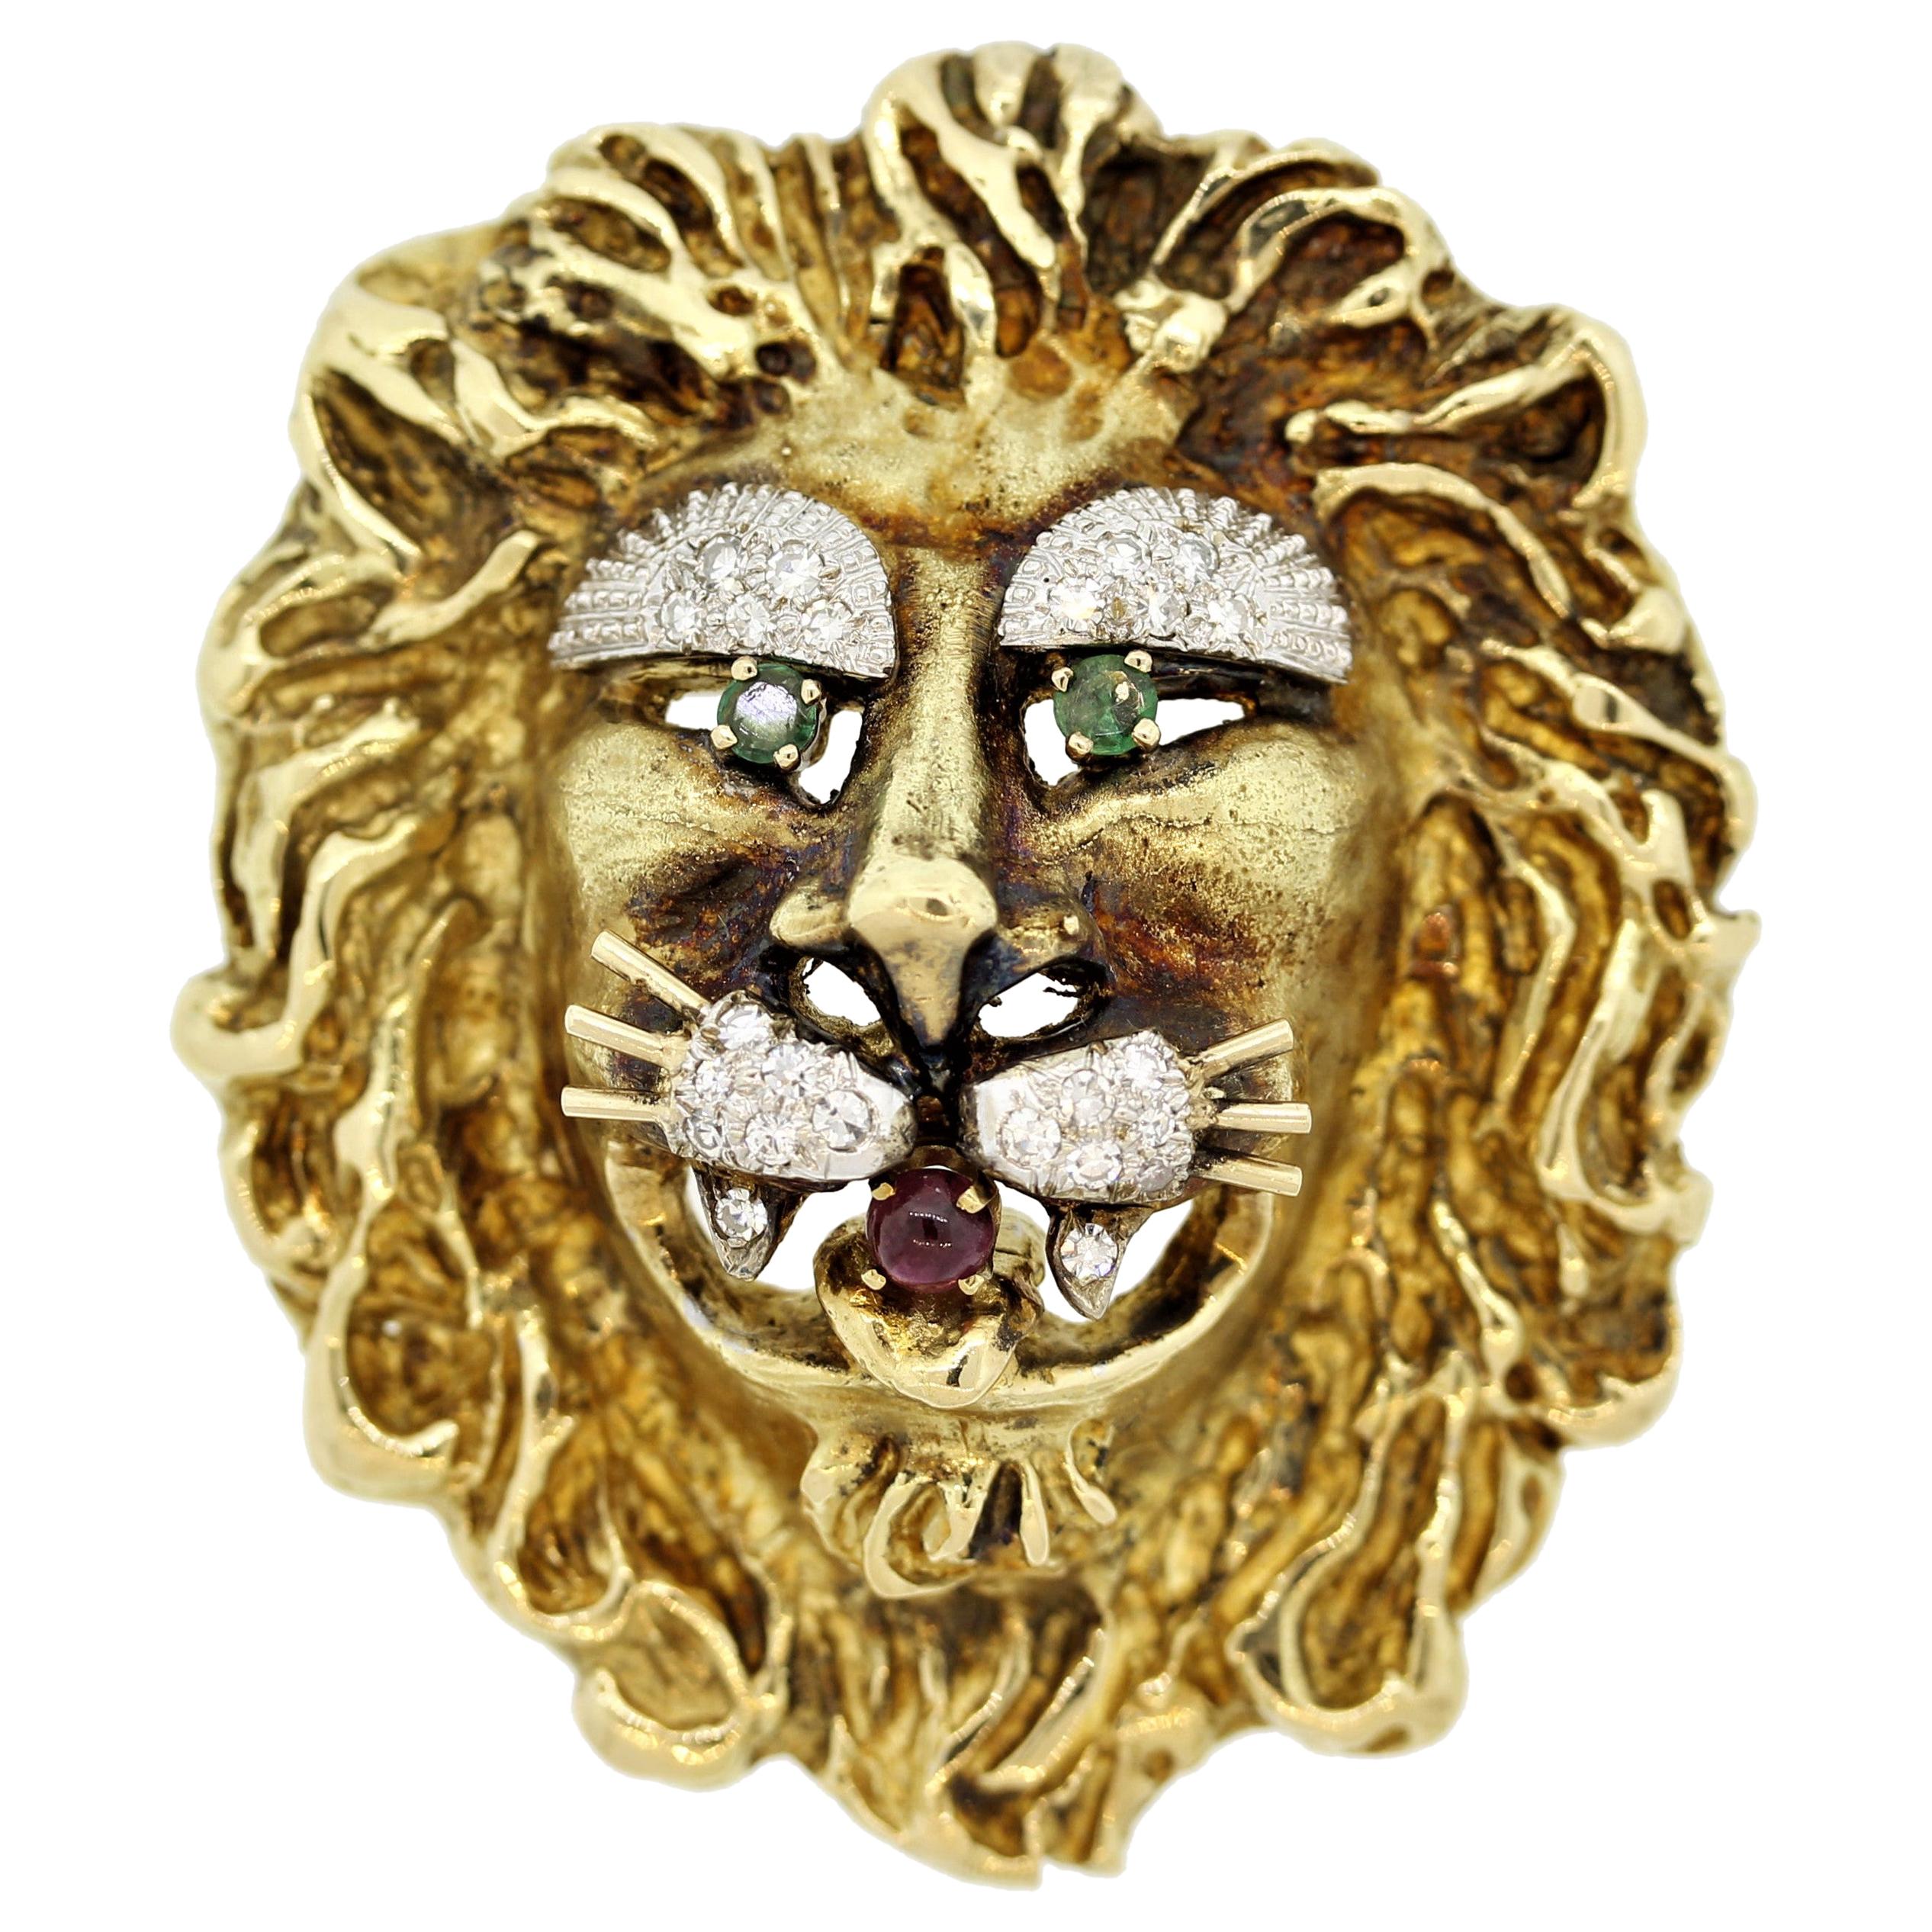 Hammerman Brothers Broche lion en or, diamants, rubis et émeraudes